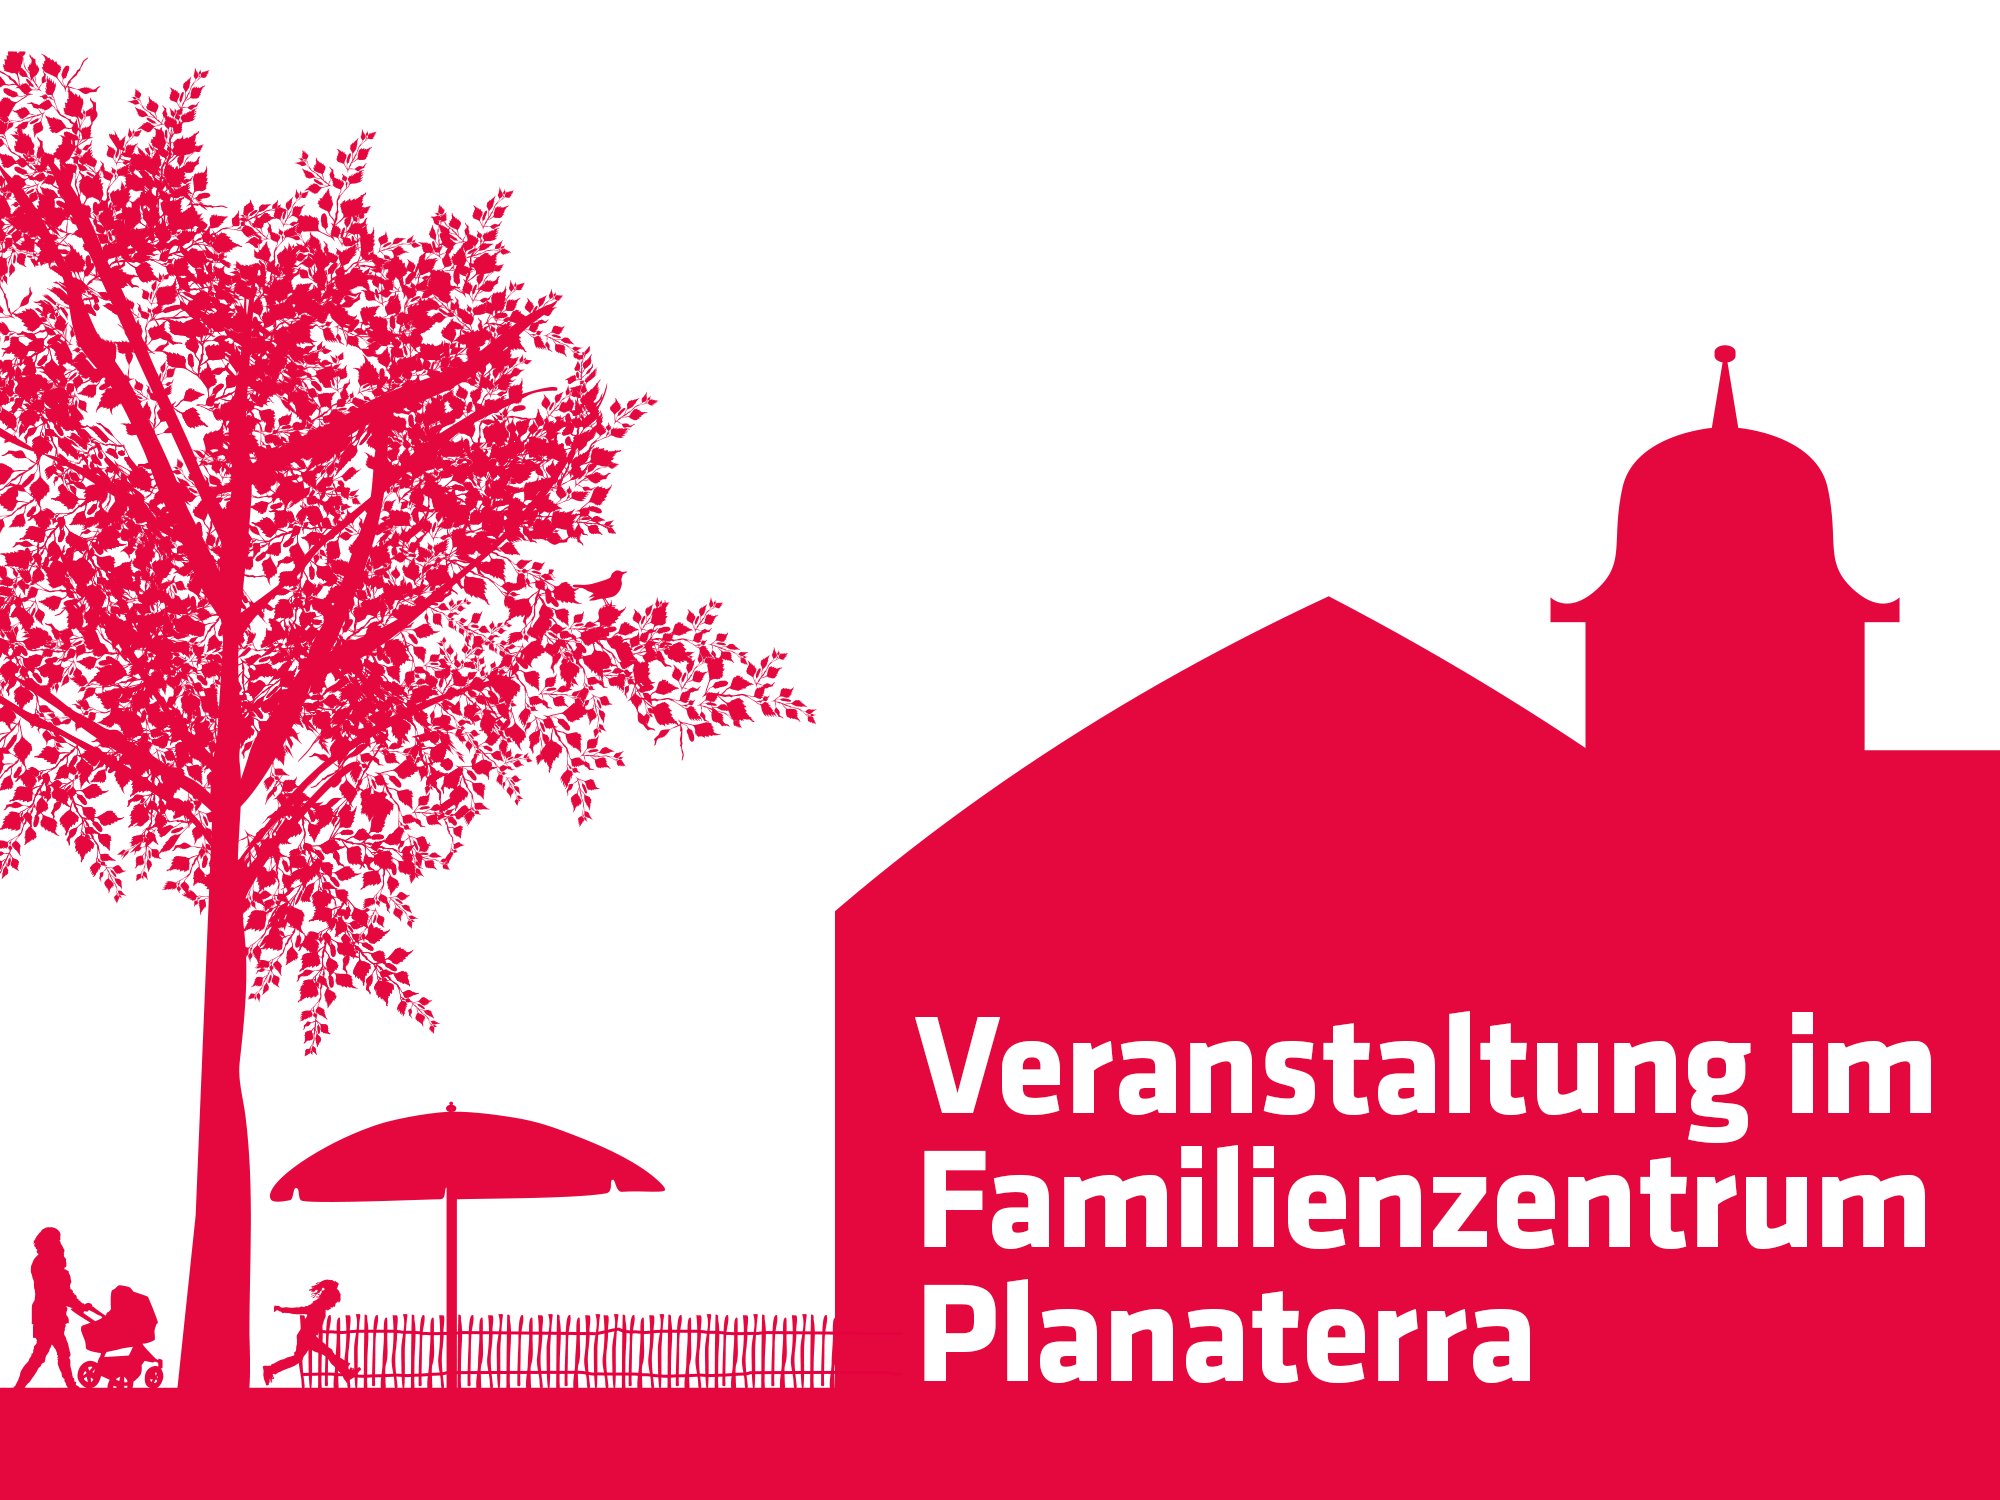 Veranstaltung im Familienzentrum Planaterra